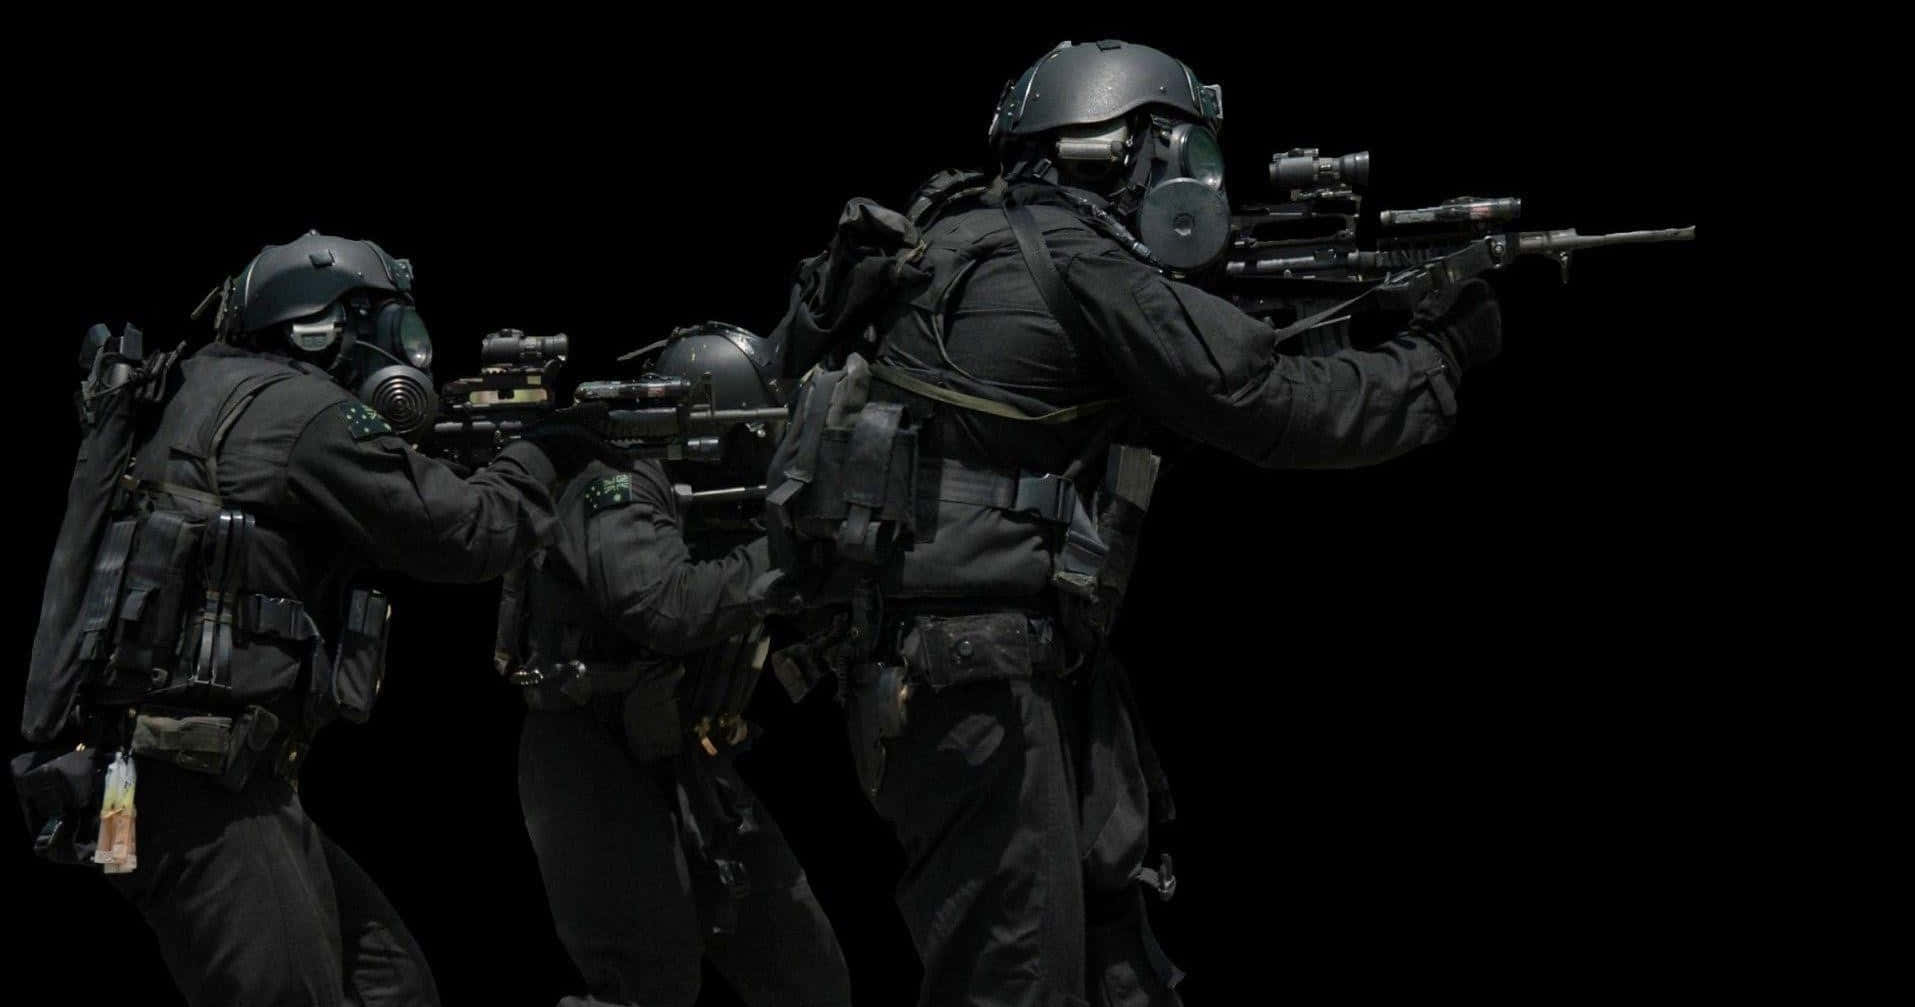 Einegruppe Von Soldaten In Schwarzen Uniformen Hält Gewehre. Wallpaper